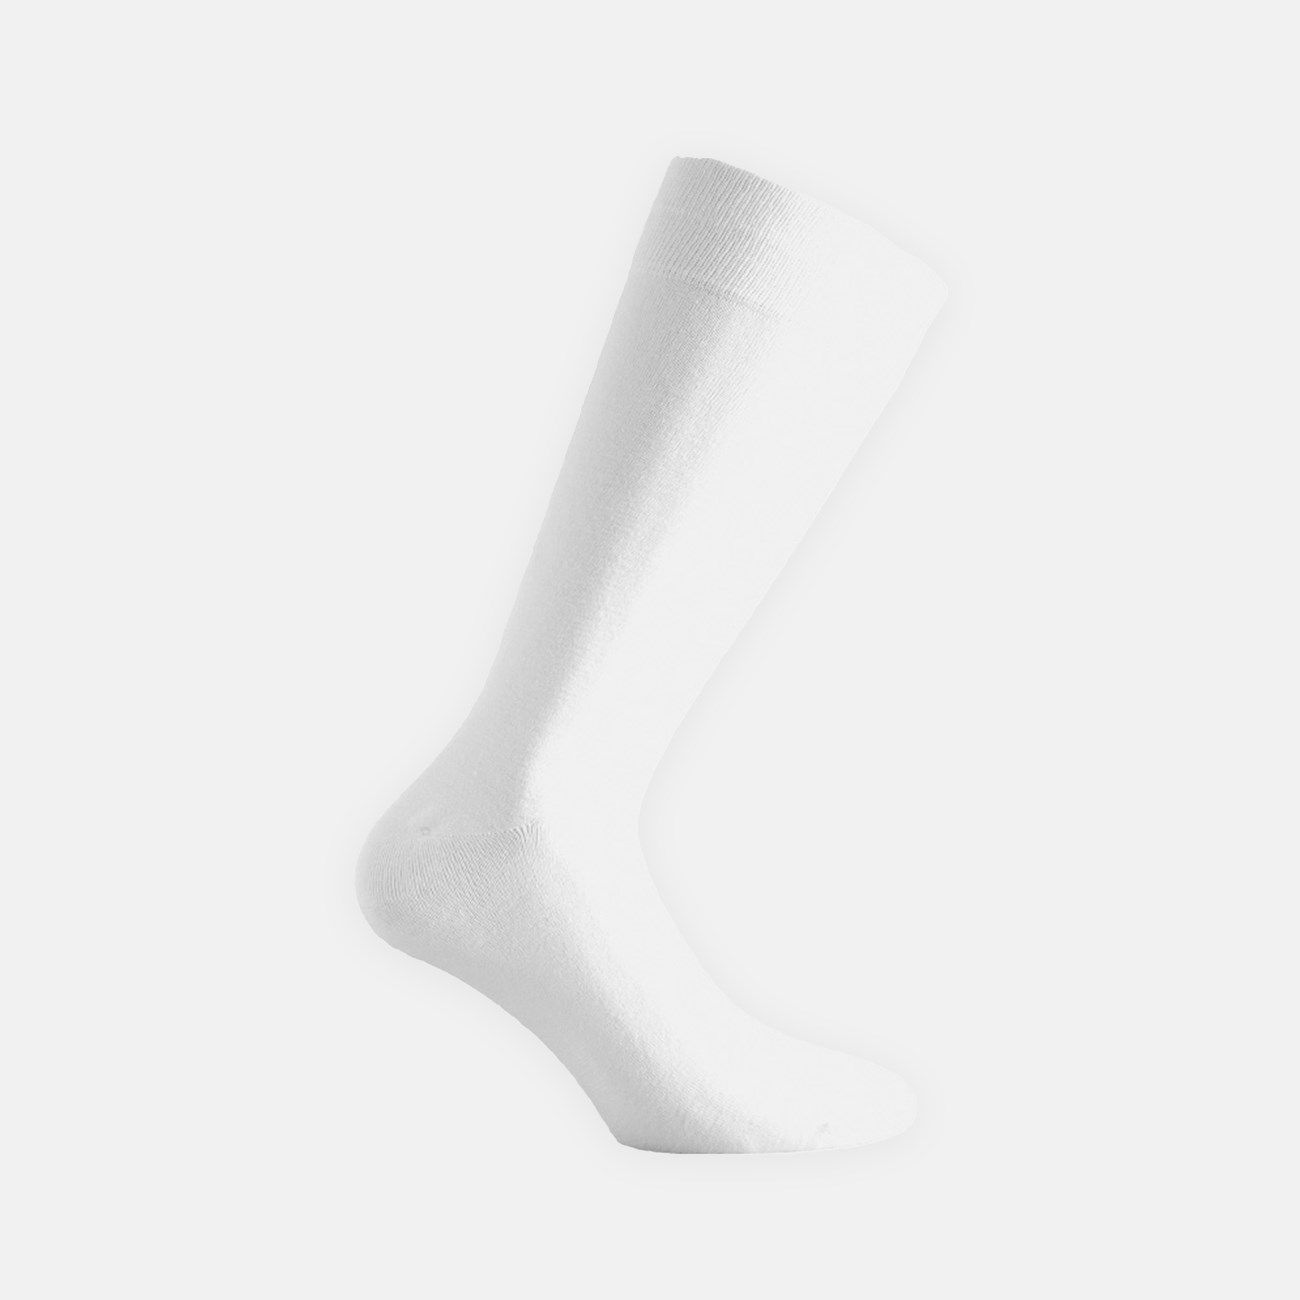  Ανδρικές Κάλτσες Bamboo  W304 - The Athlete's Foot